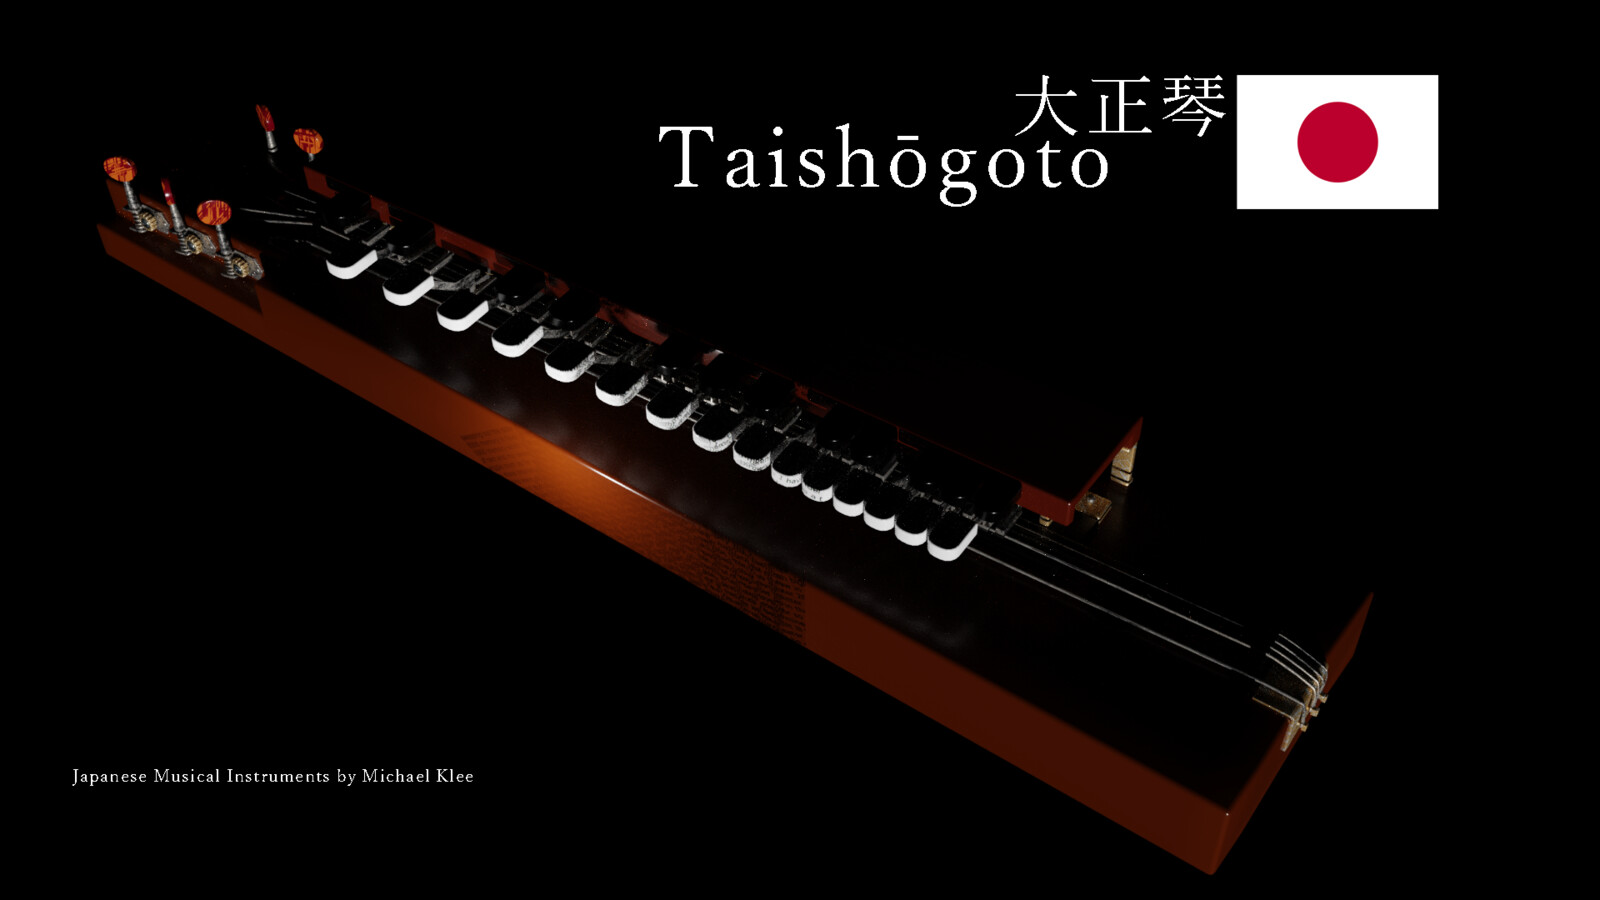 The taishōgoto 大正琴 shadow